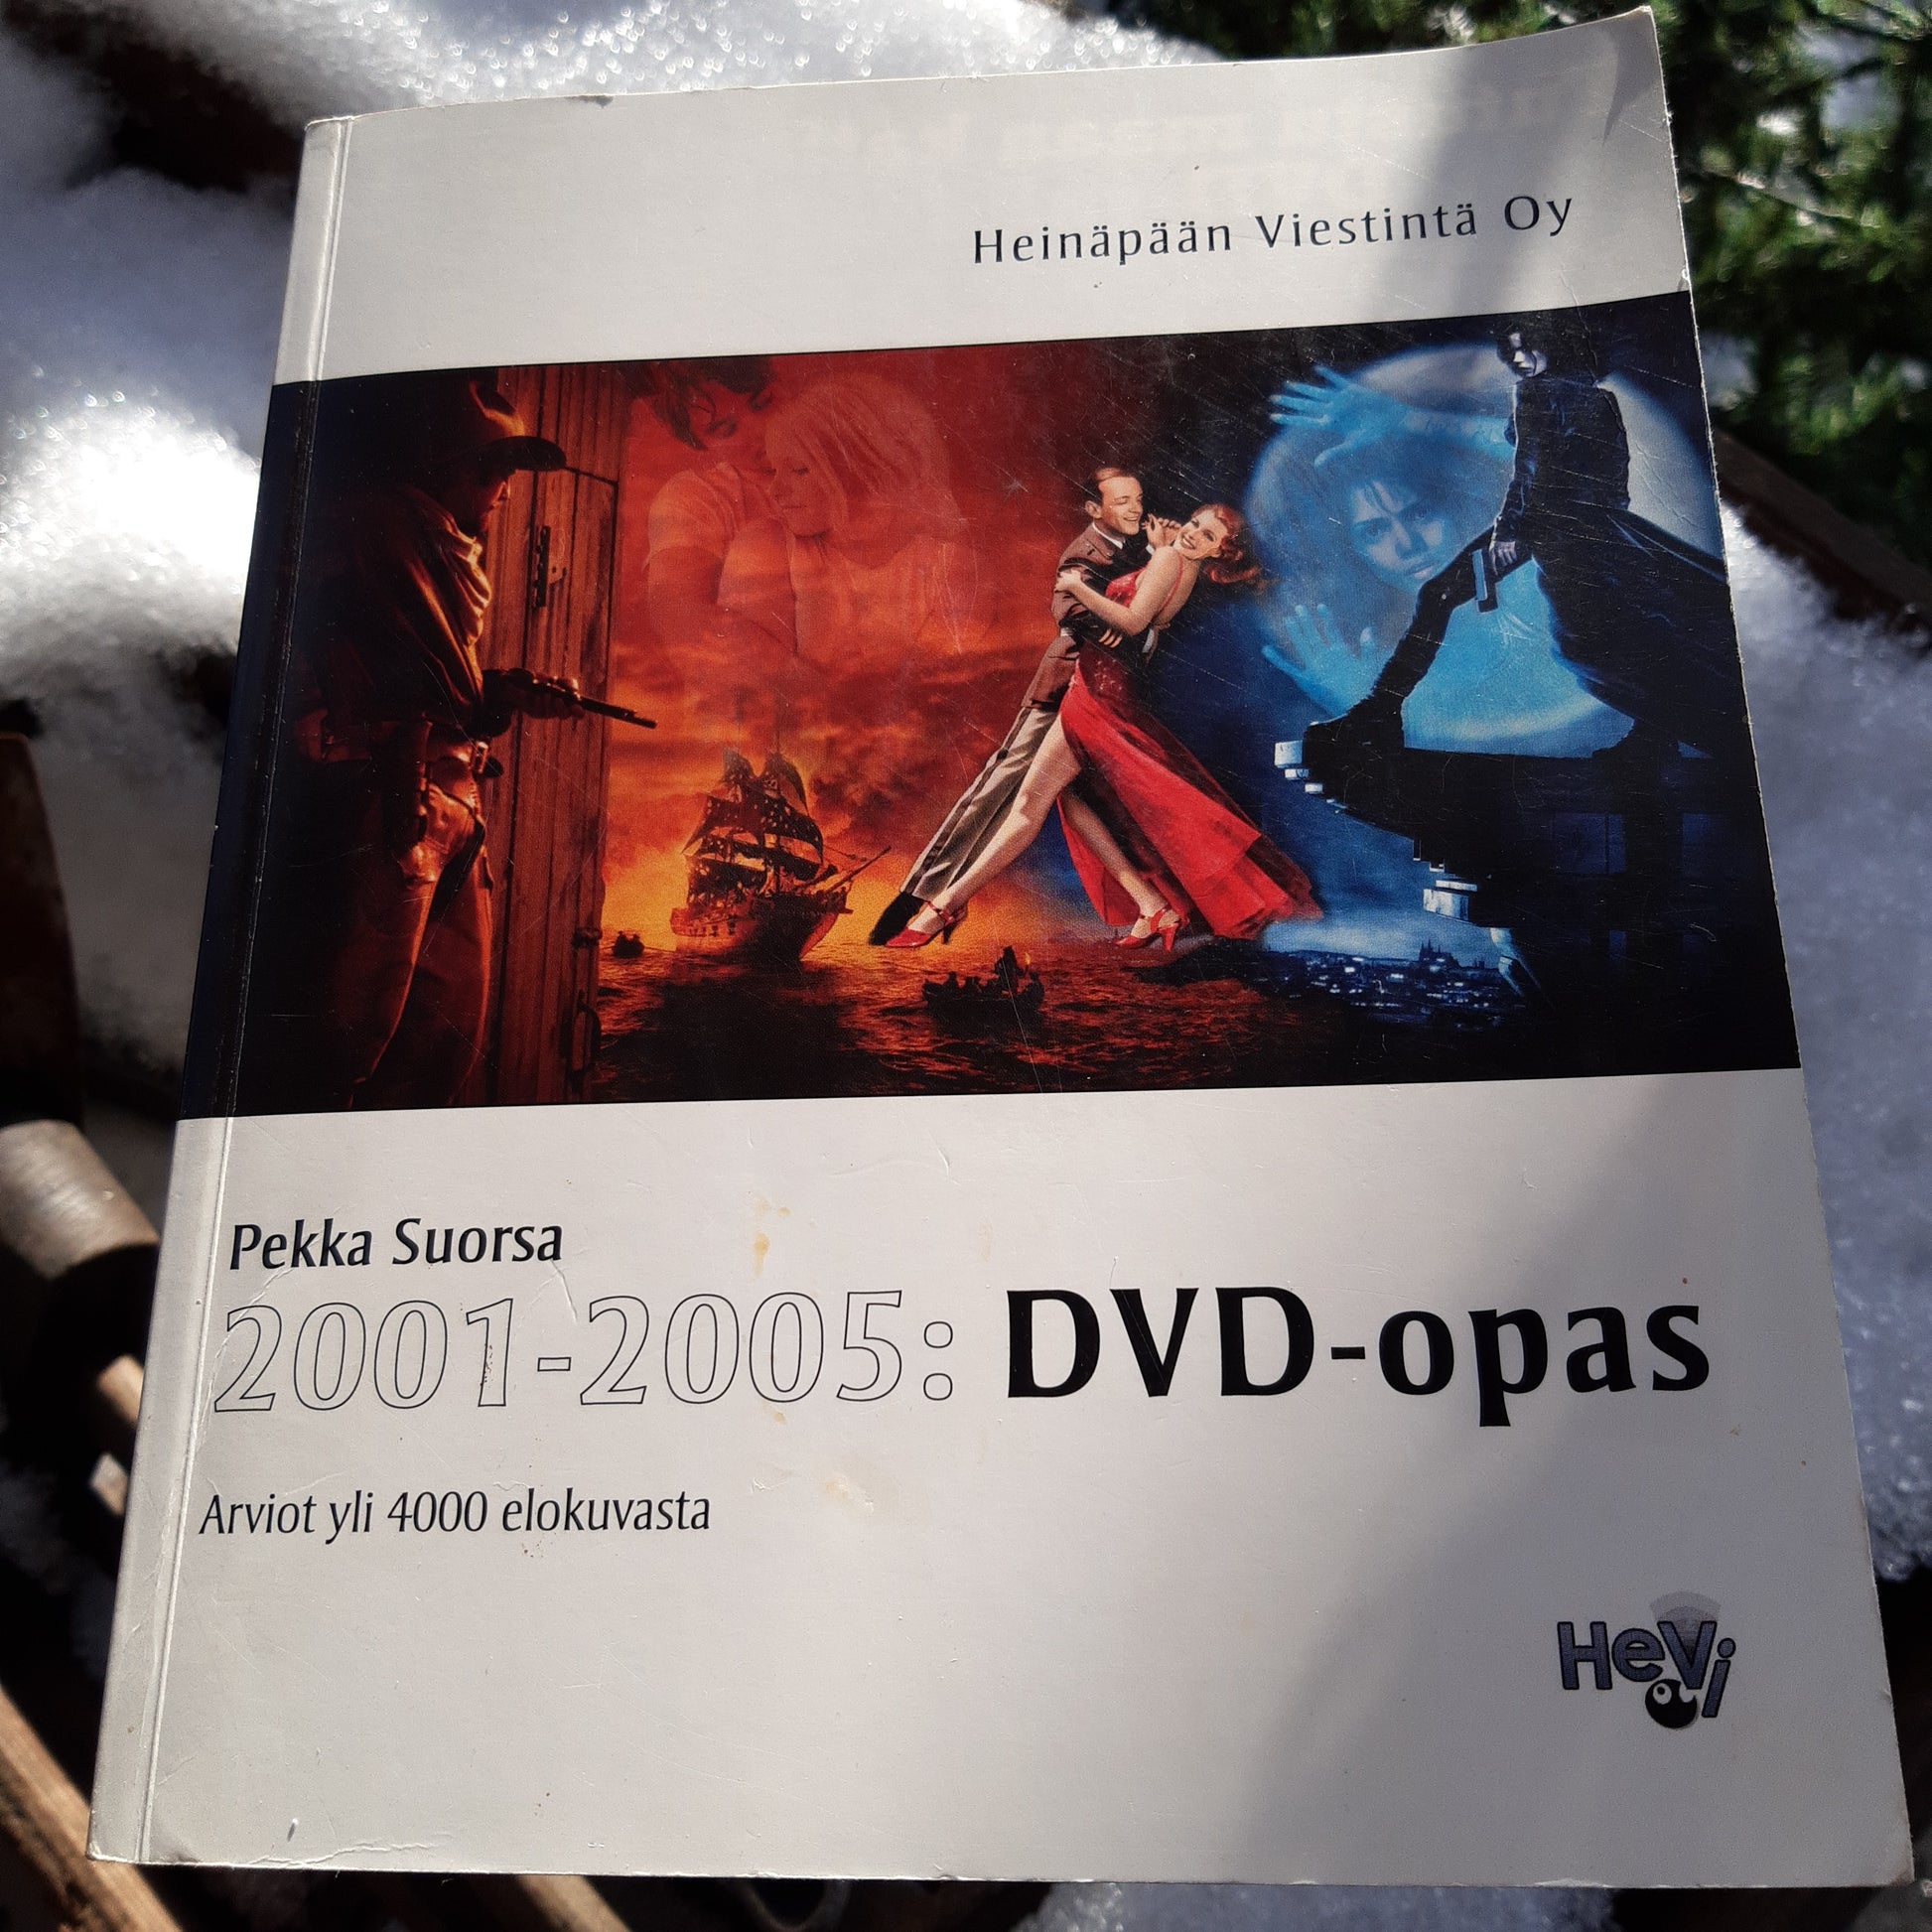 2001-2005: dvd-opas